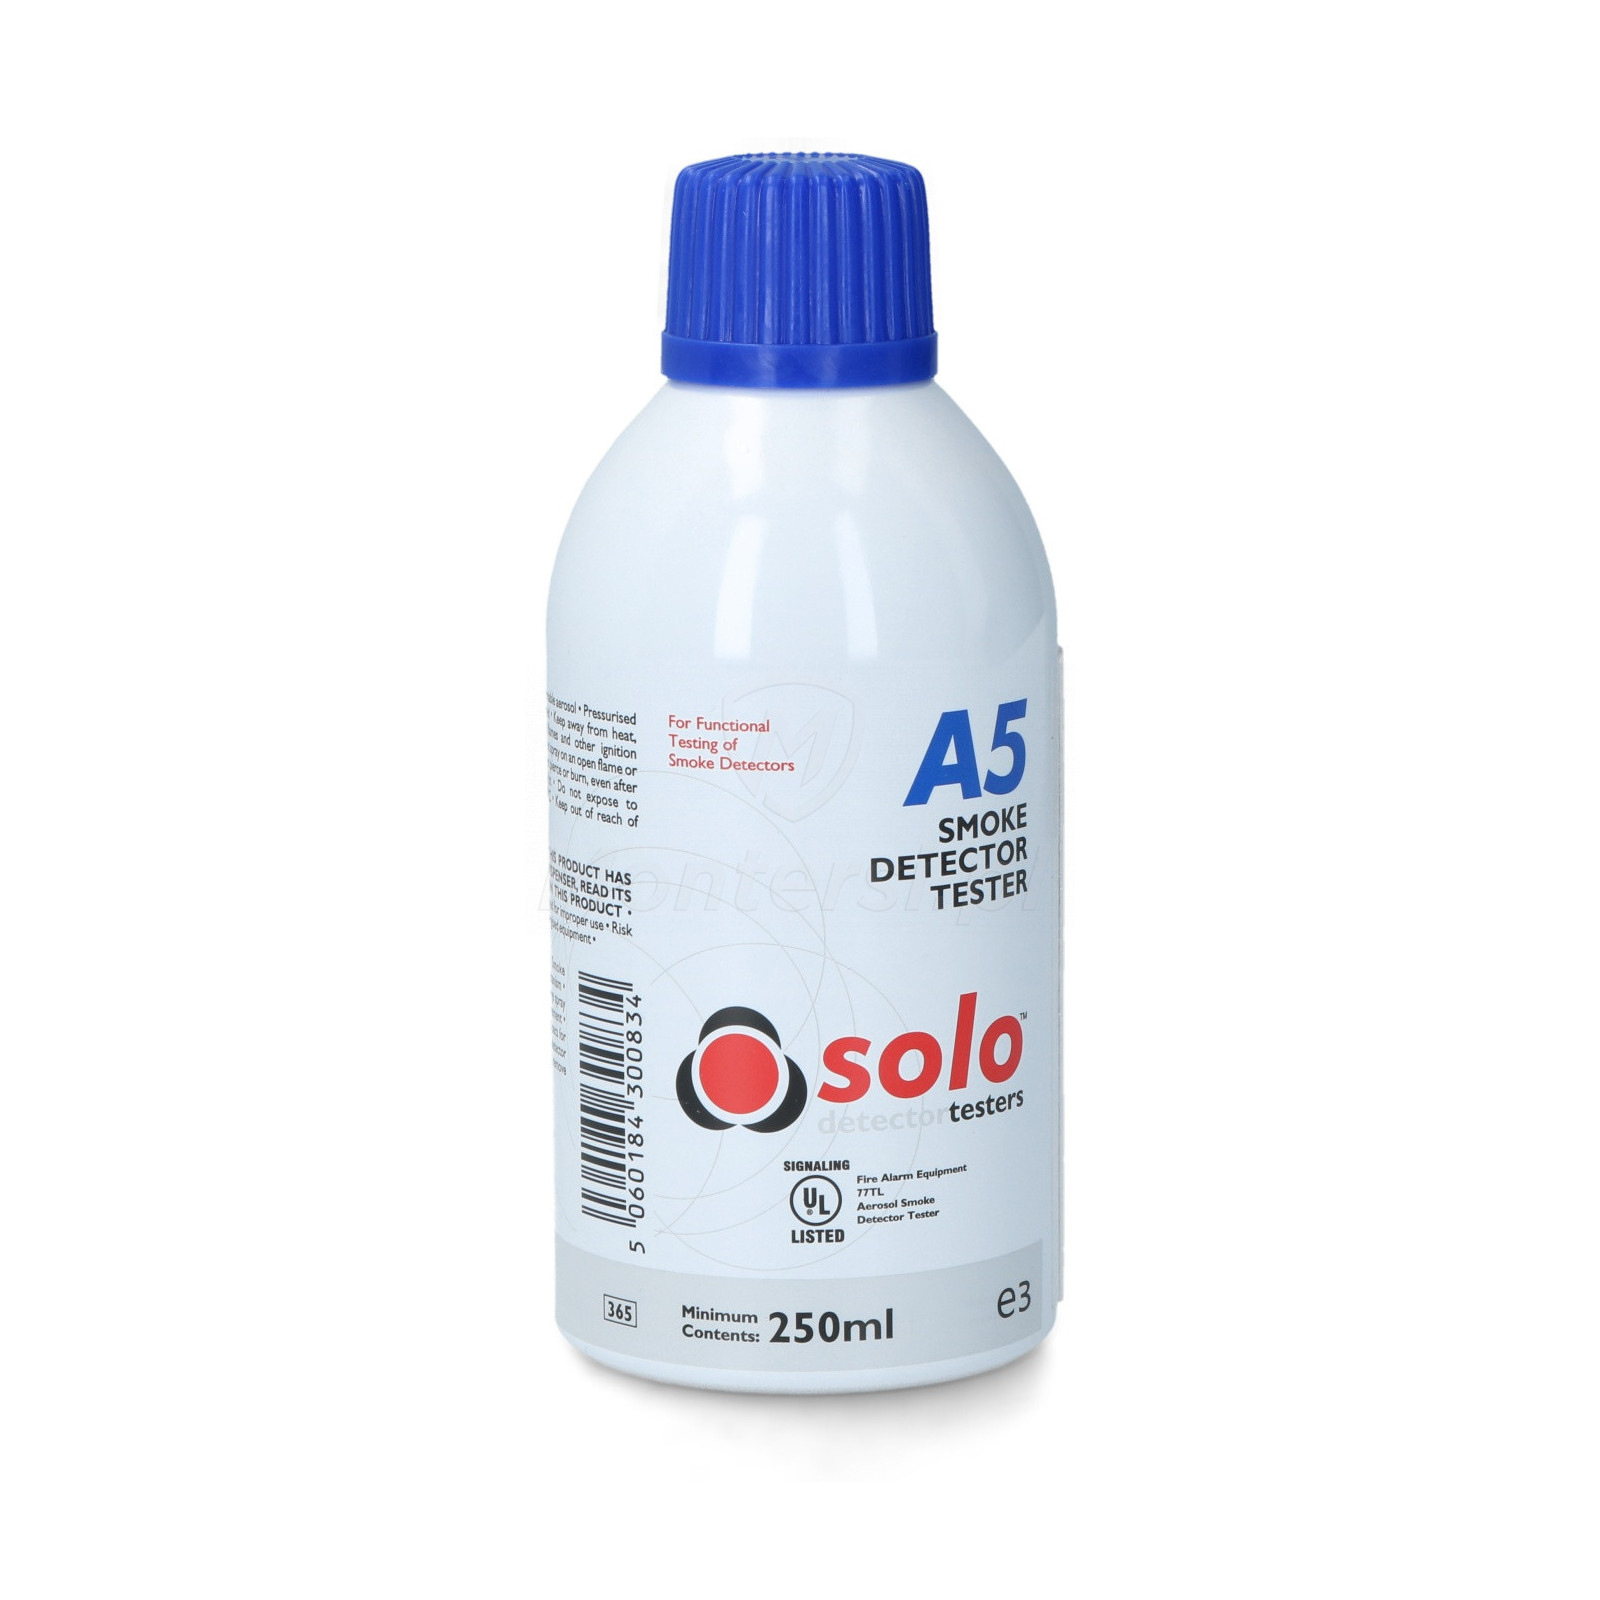 A5-001 - Aerozol testowy SOLO